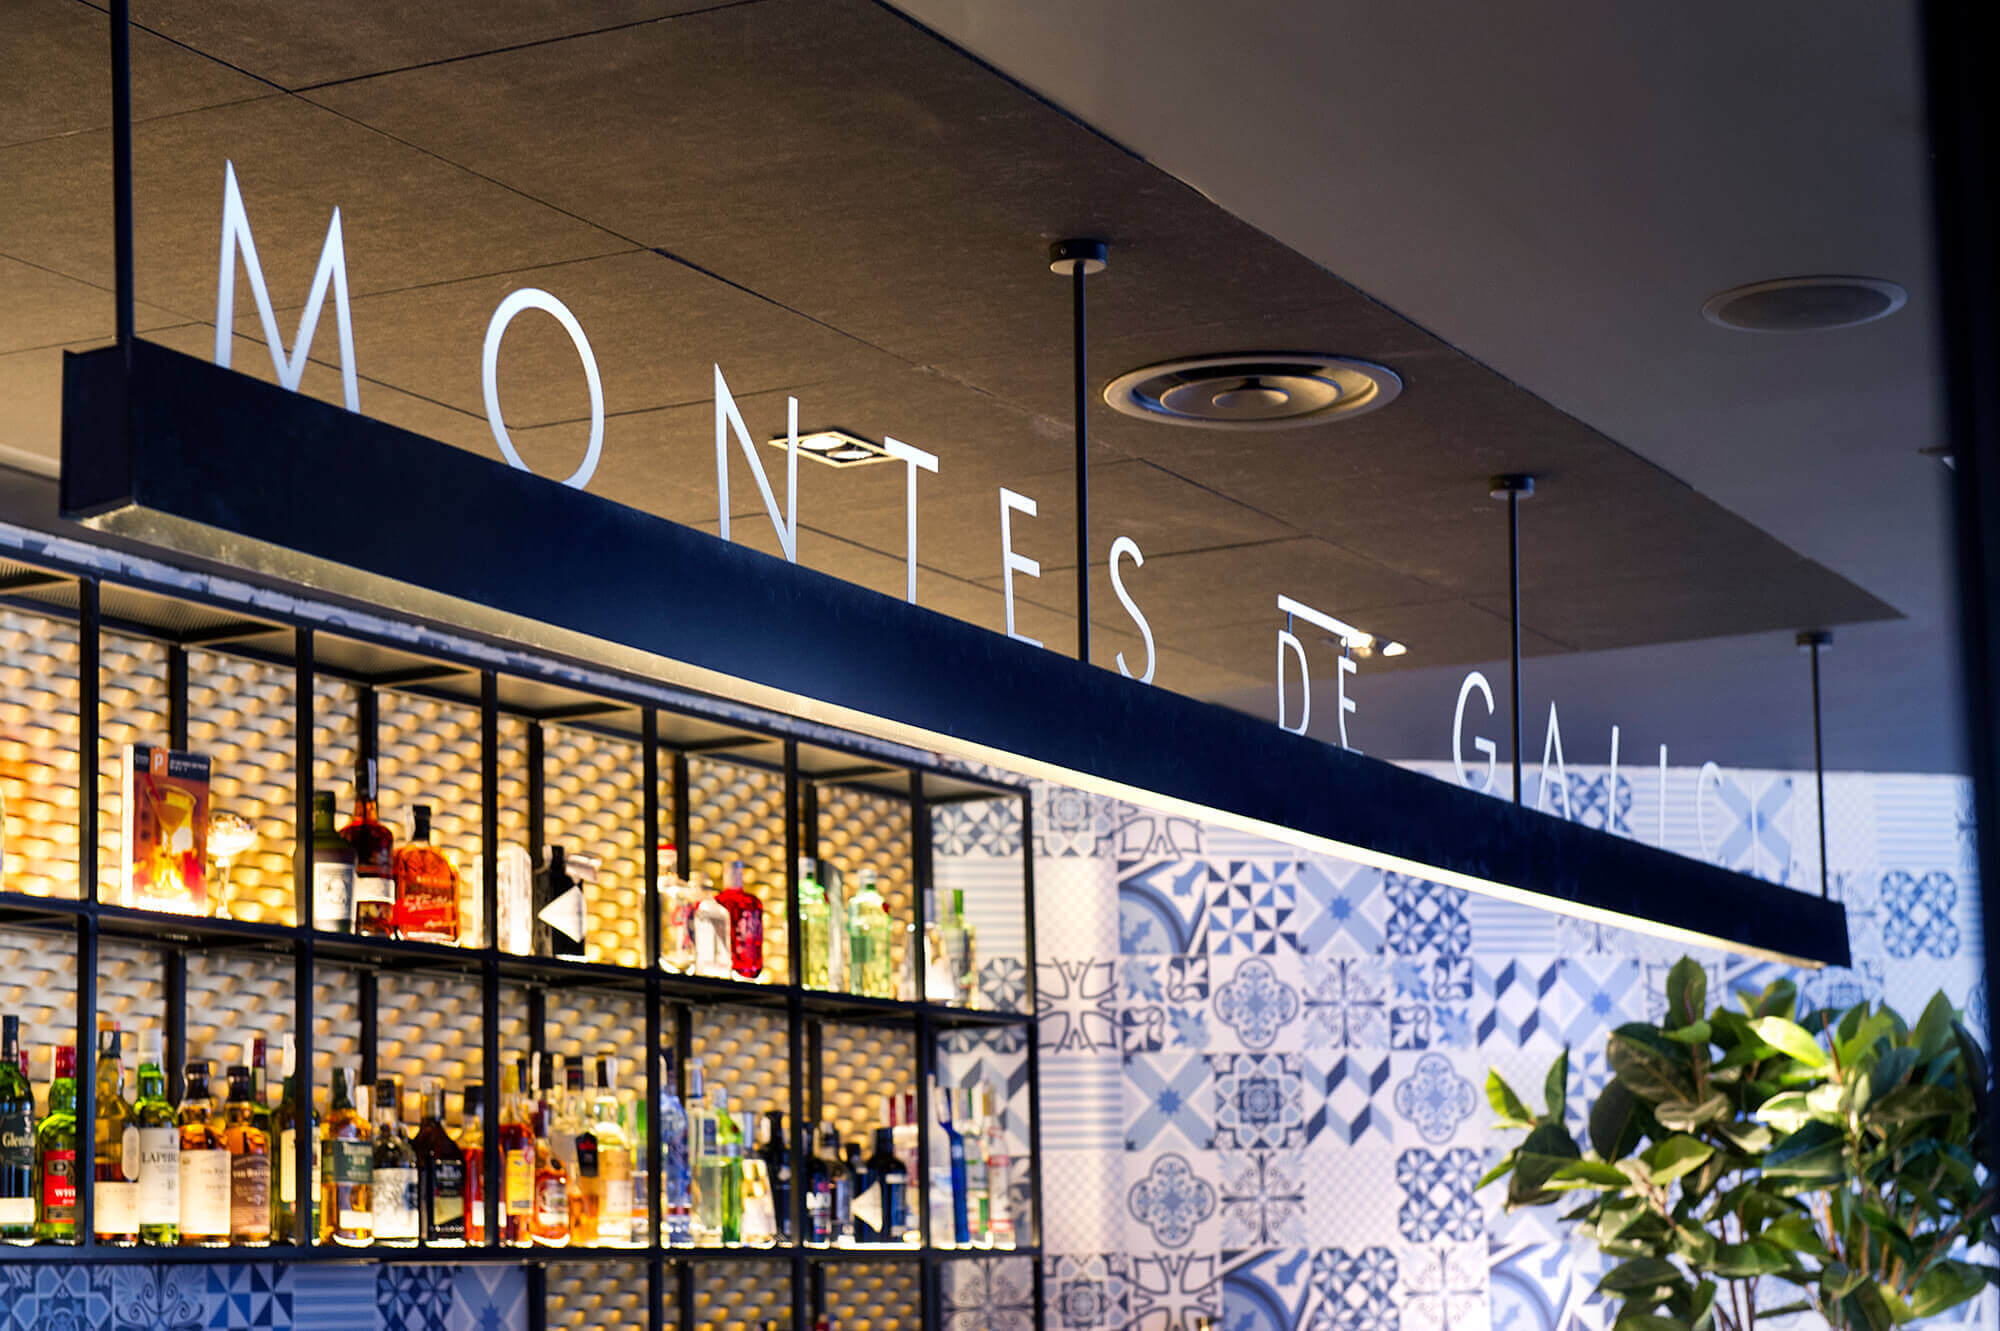 Denys Von Arend decoración Restaurante Montes de Galicia detalle barra bar